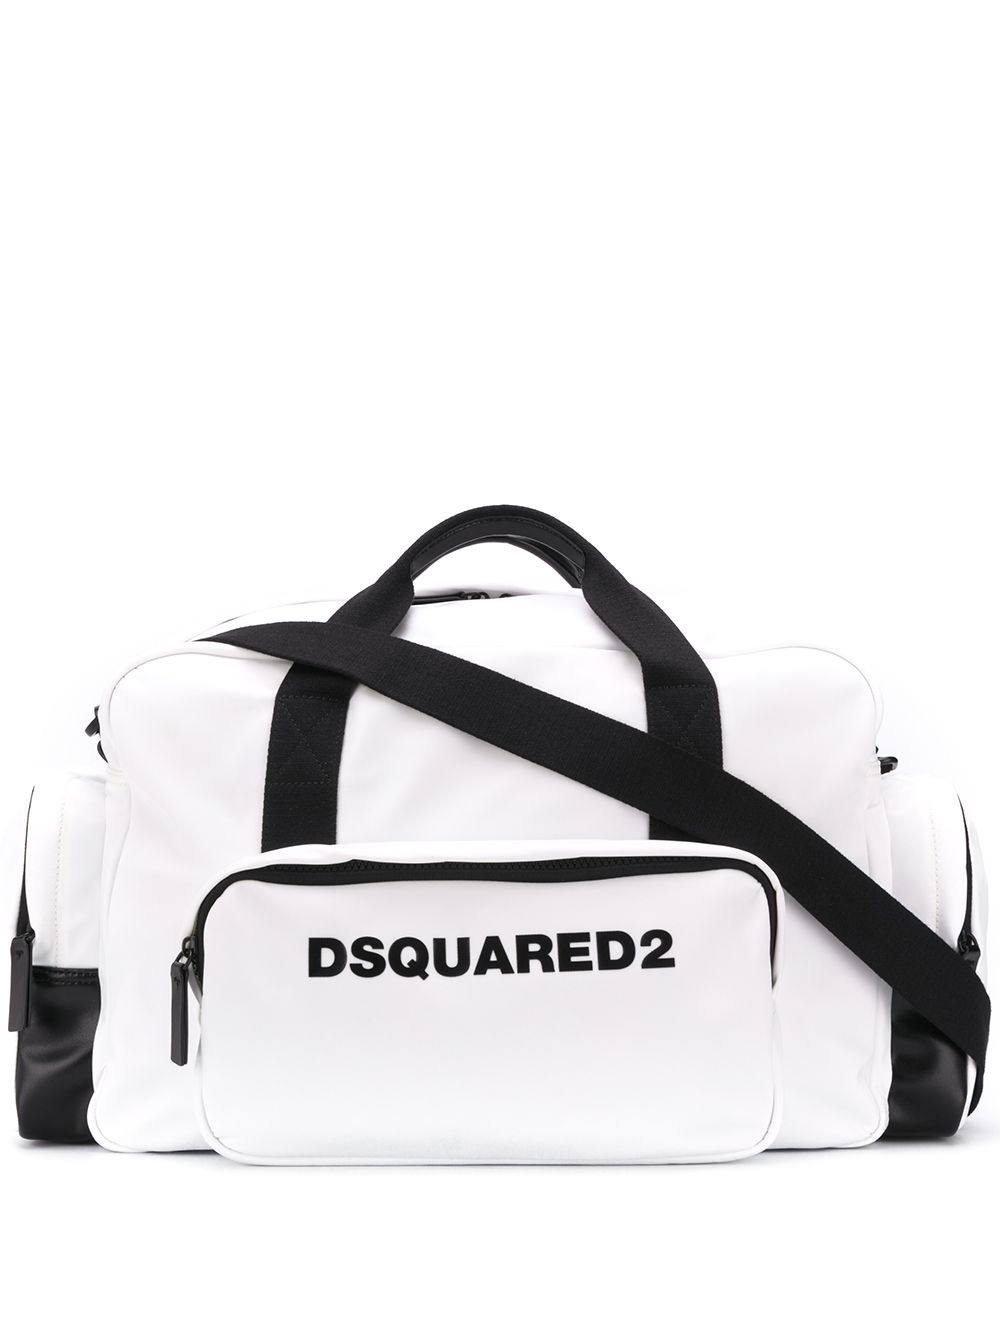 фото Dsquared2 дорожная сумка с логотипом